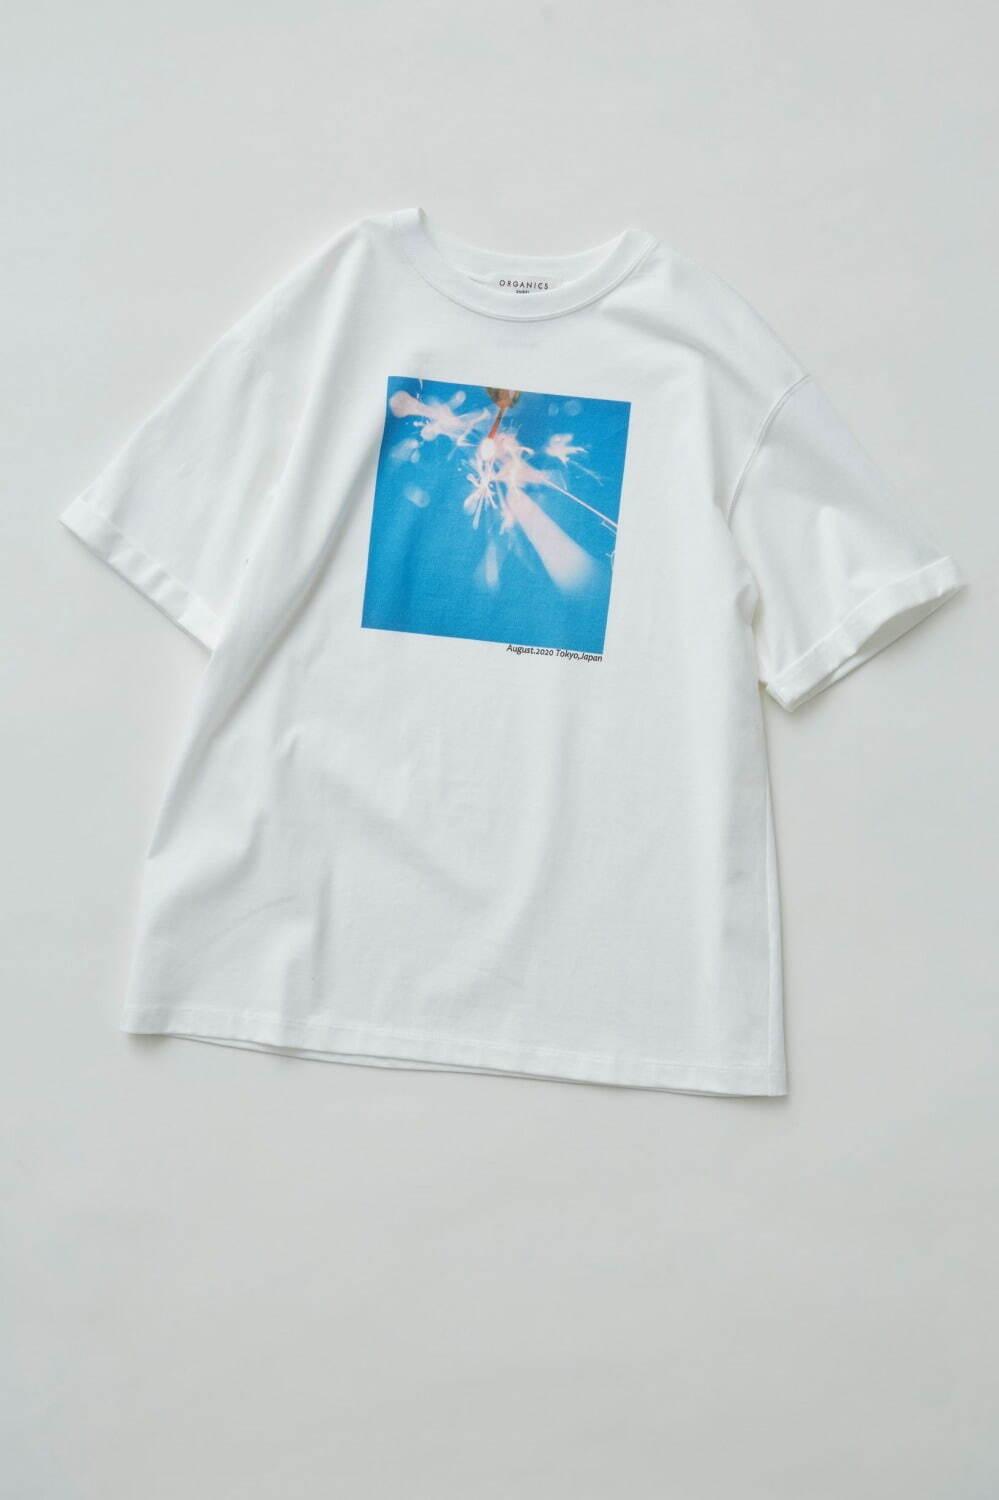 スナイデル「メリーゴーランド＆線香花火」モチーフのTシャツ、人気フォトグラファーとコラボ コピー